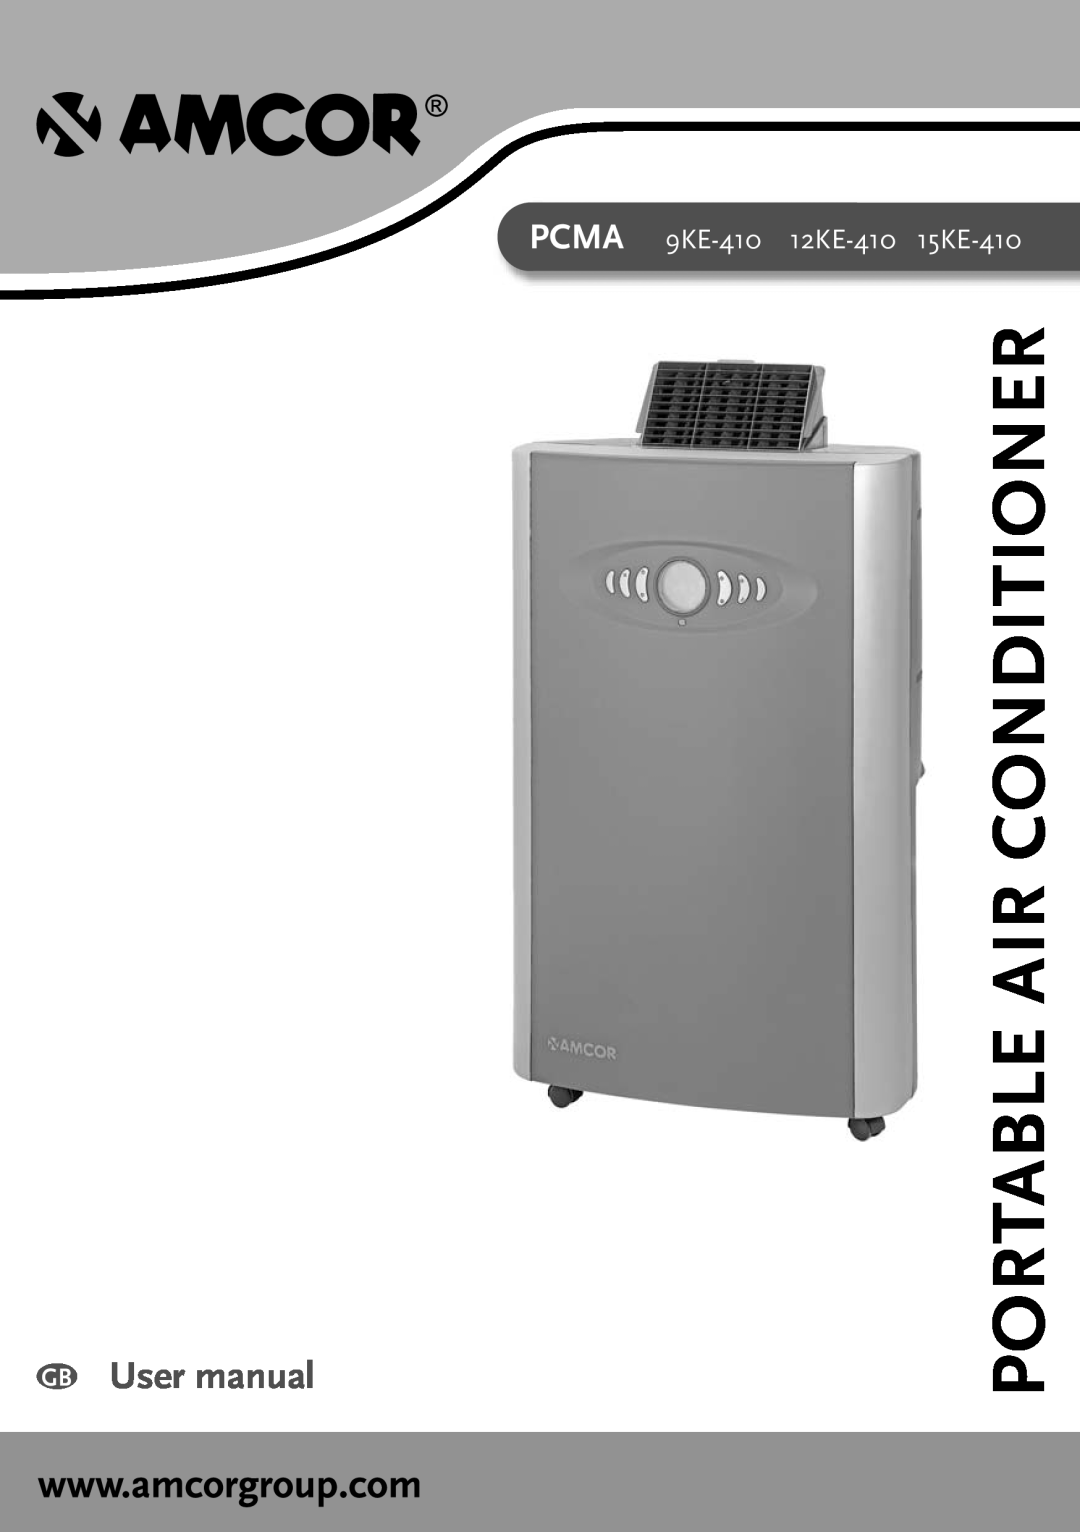 Amcor PCMA 15KE-410, PCMA 12KE-410 user manual Portable Air Conditioner, PCMA 9KE-410 12KE-410 15KE-410 